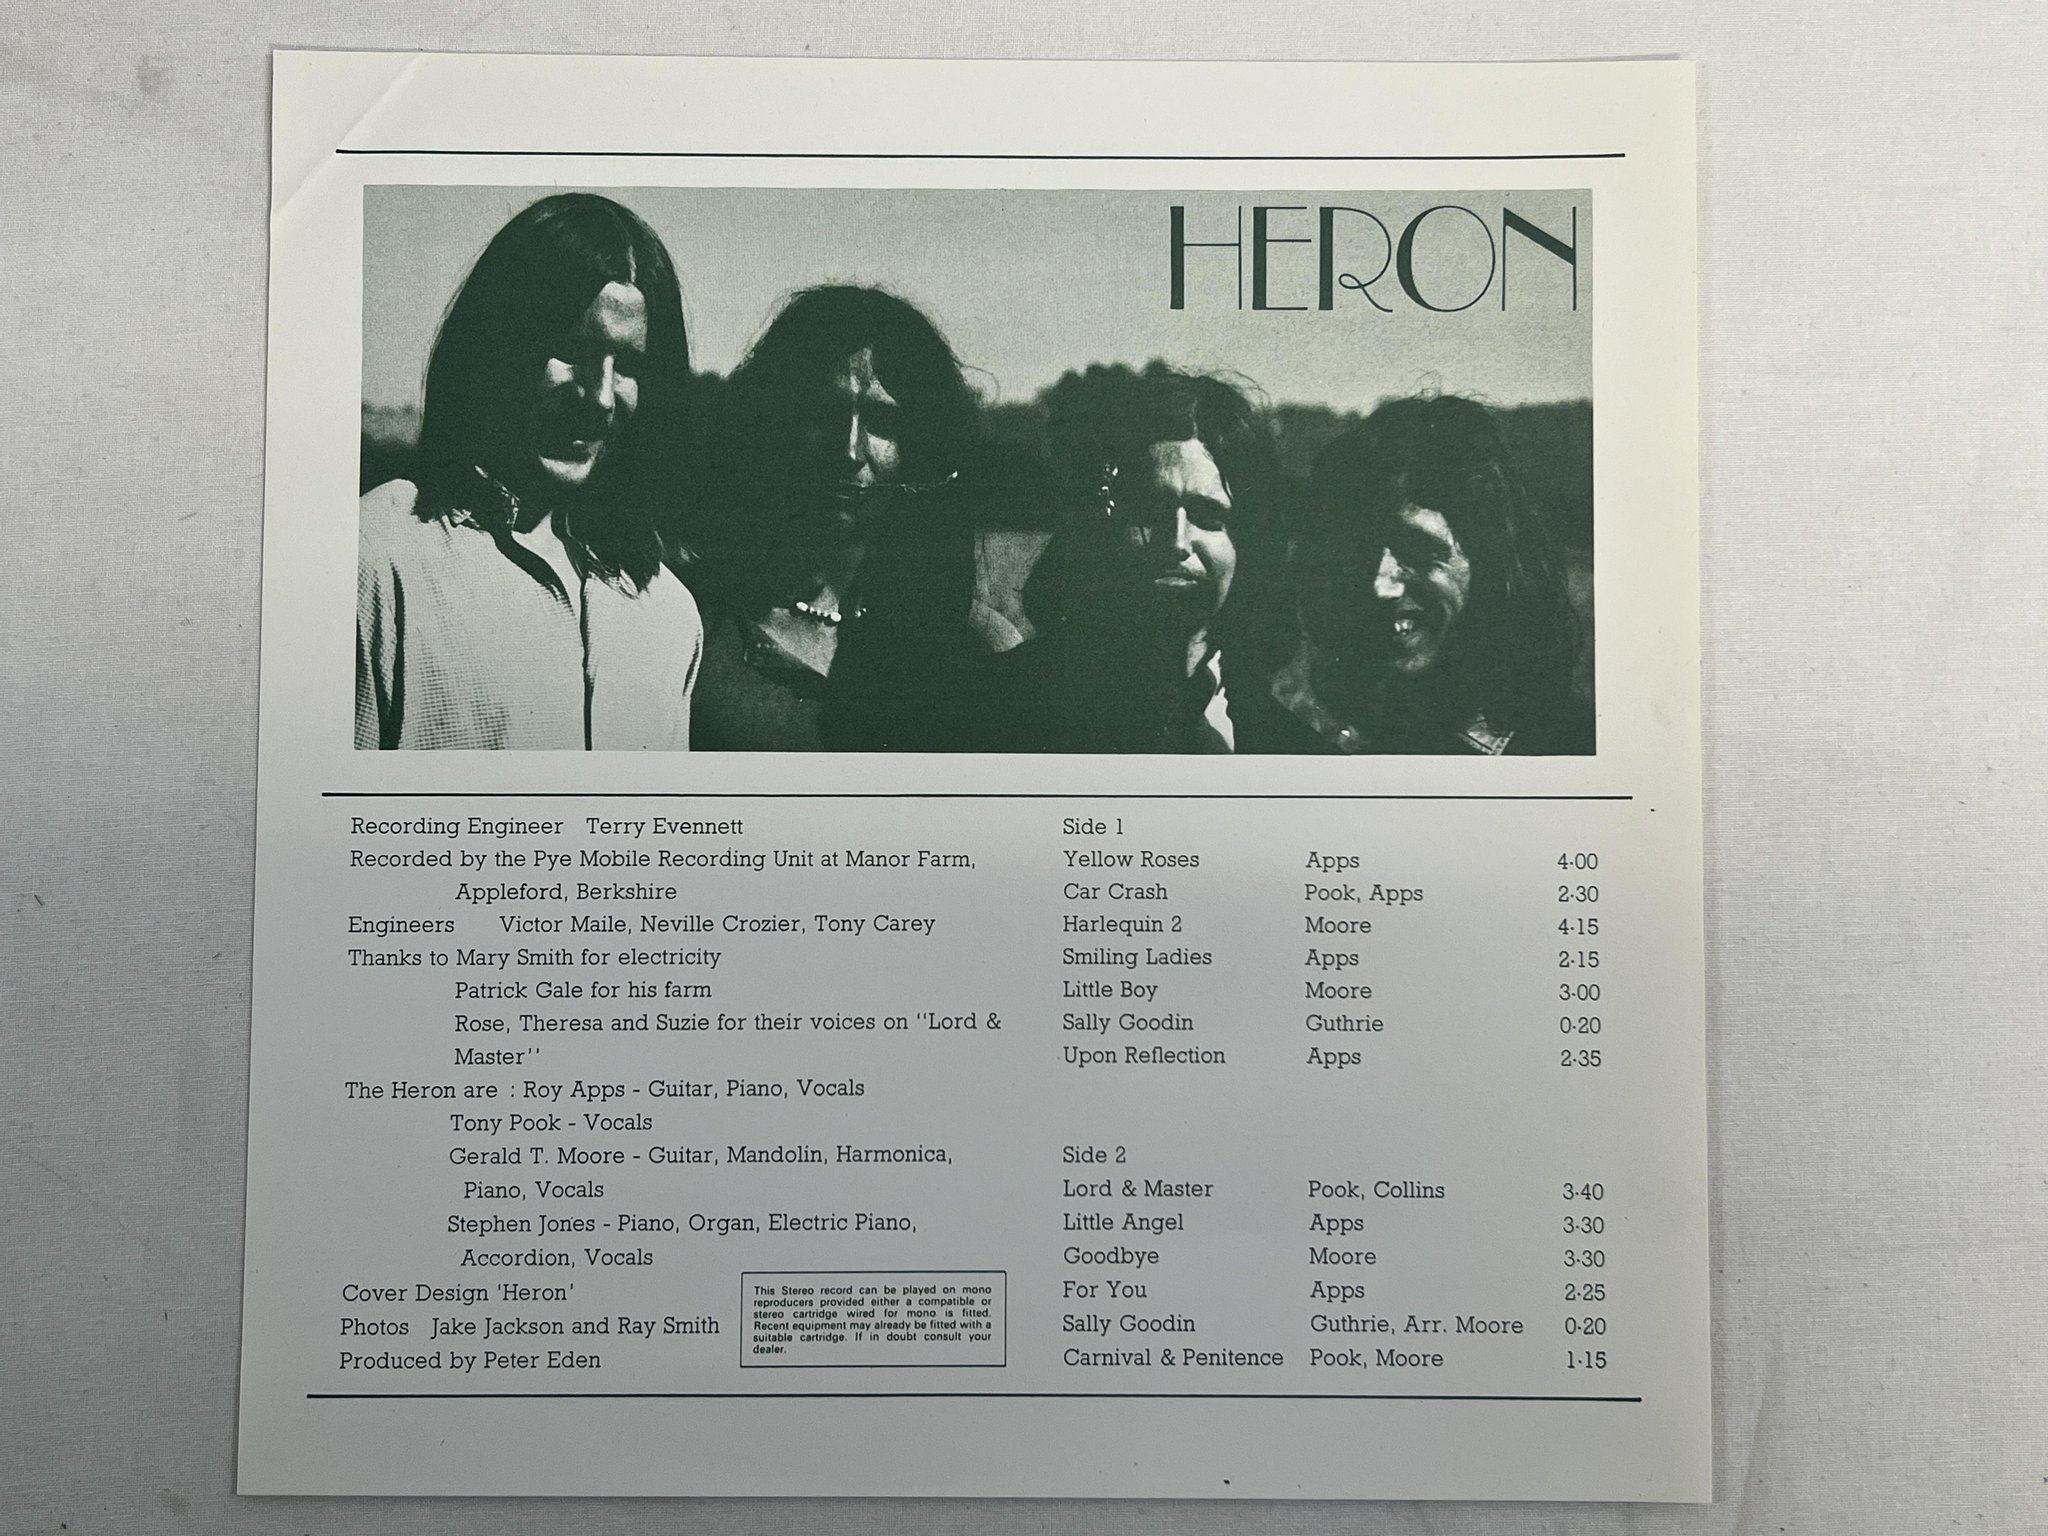 Omslagsbild för skivan HERON s/t LP -70 DAWN DNLS 3010 ***** seriously rare acid folk psych *****